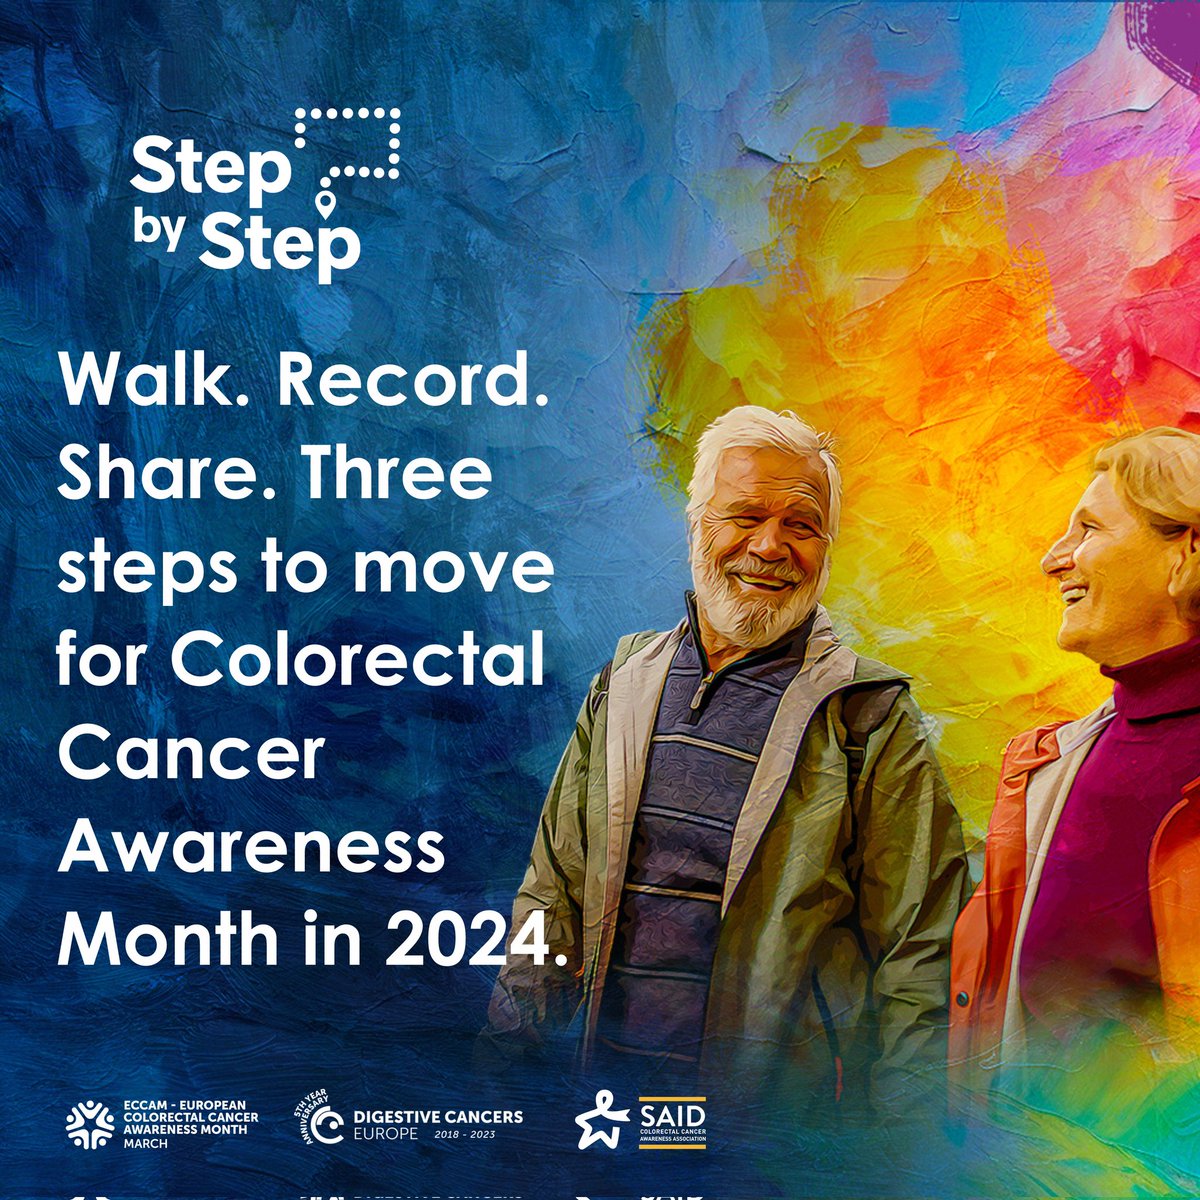 Download our app now to prevent Colorectal Cancer #StepByStep👉 
eccam.digestivecancers.eu

#ECCAM2024 #StepByStep #StepUpforCRC #CRC
#cancerprevention #CRC